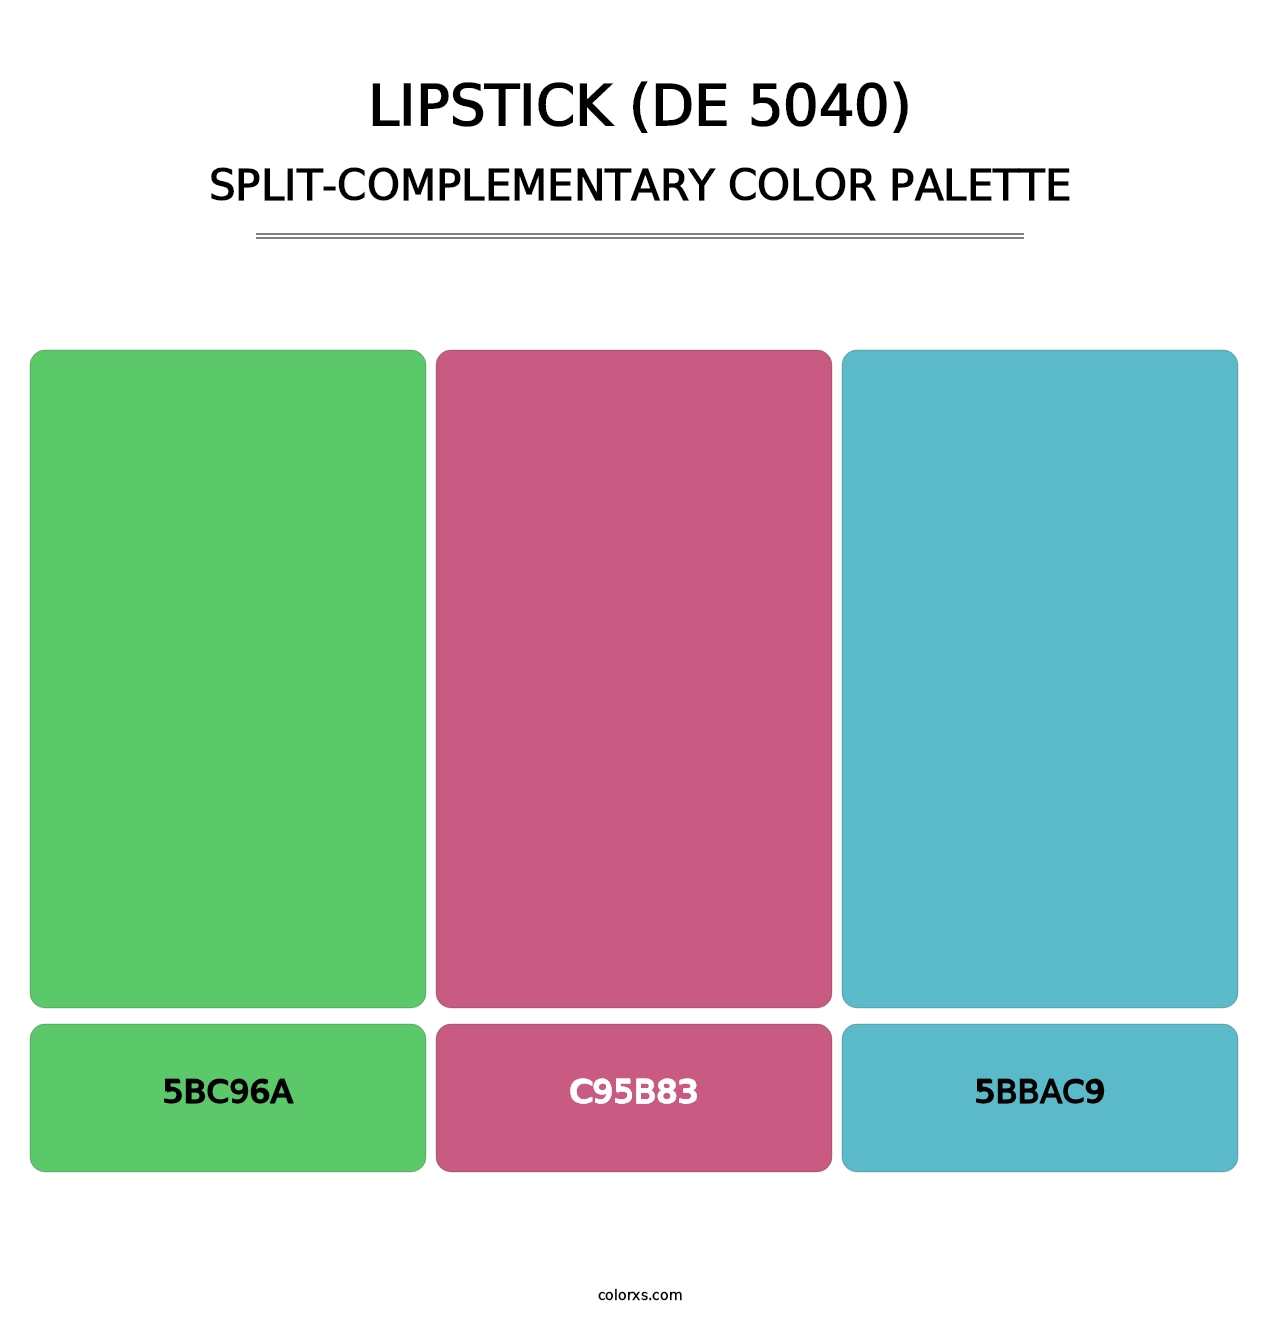 Lipstick (DE 5040) - Split-Complementary Color Palette